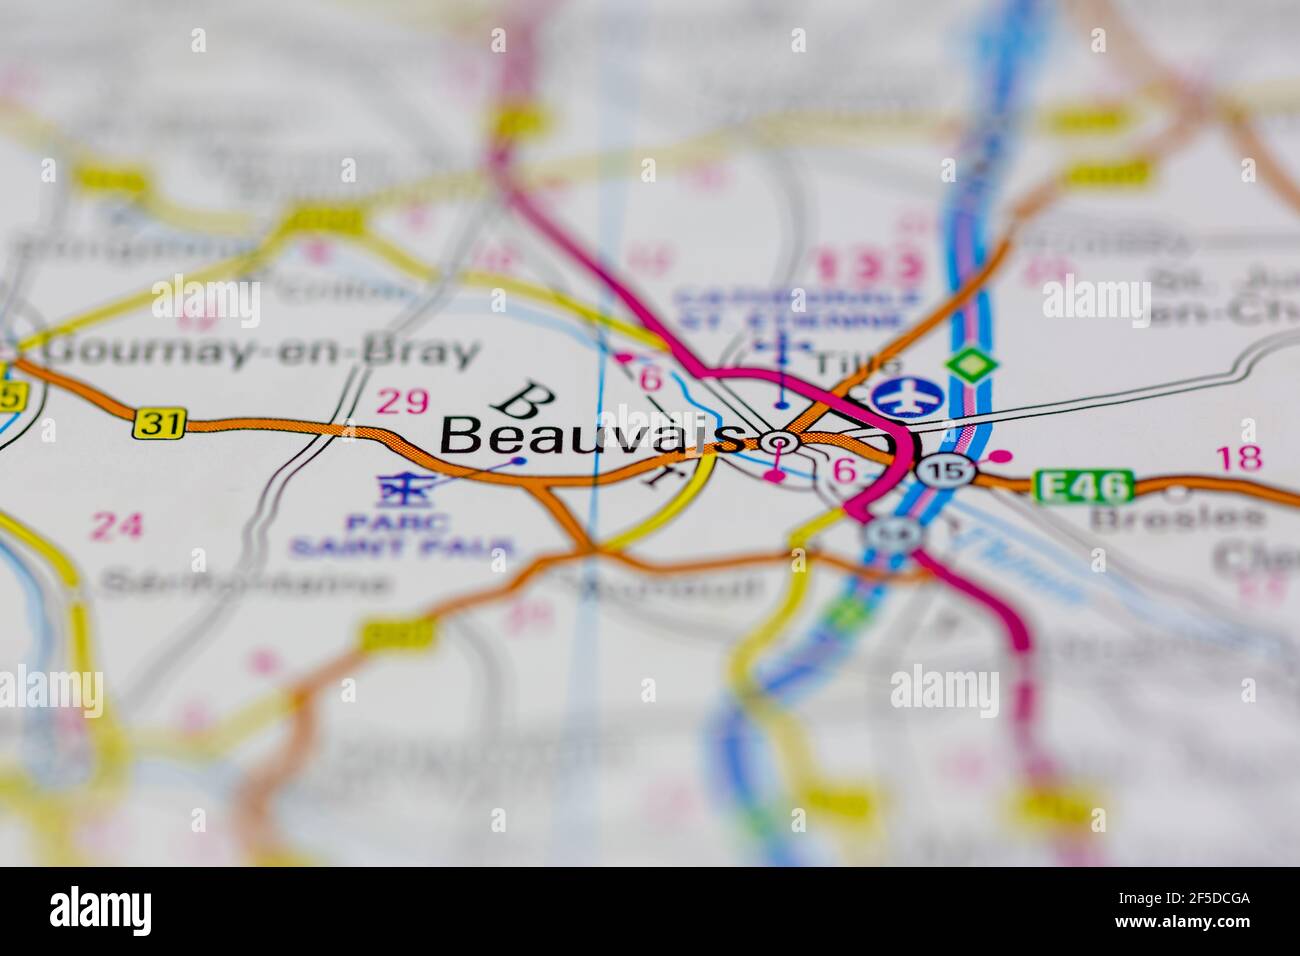 Beauvais et ses environs sont indiqués sur une carte de la géographie ou carte routière Banque D'Images